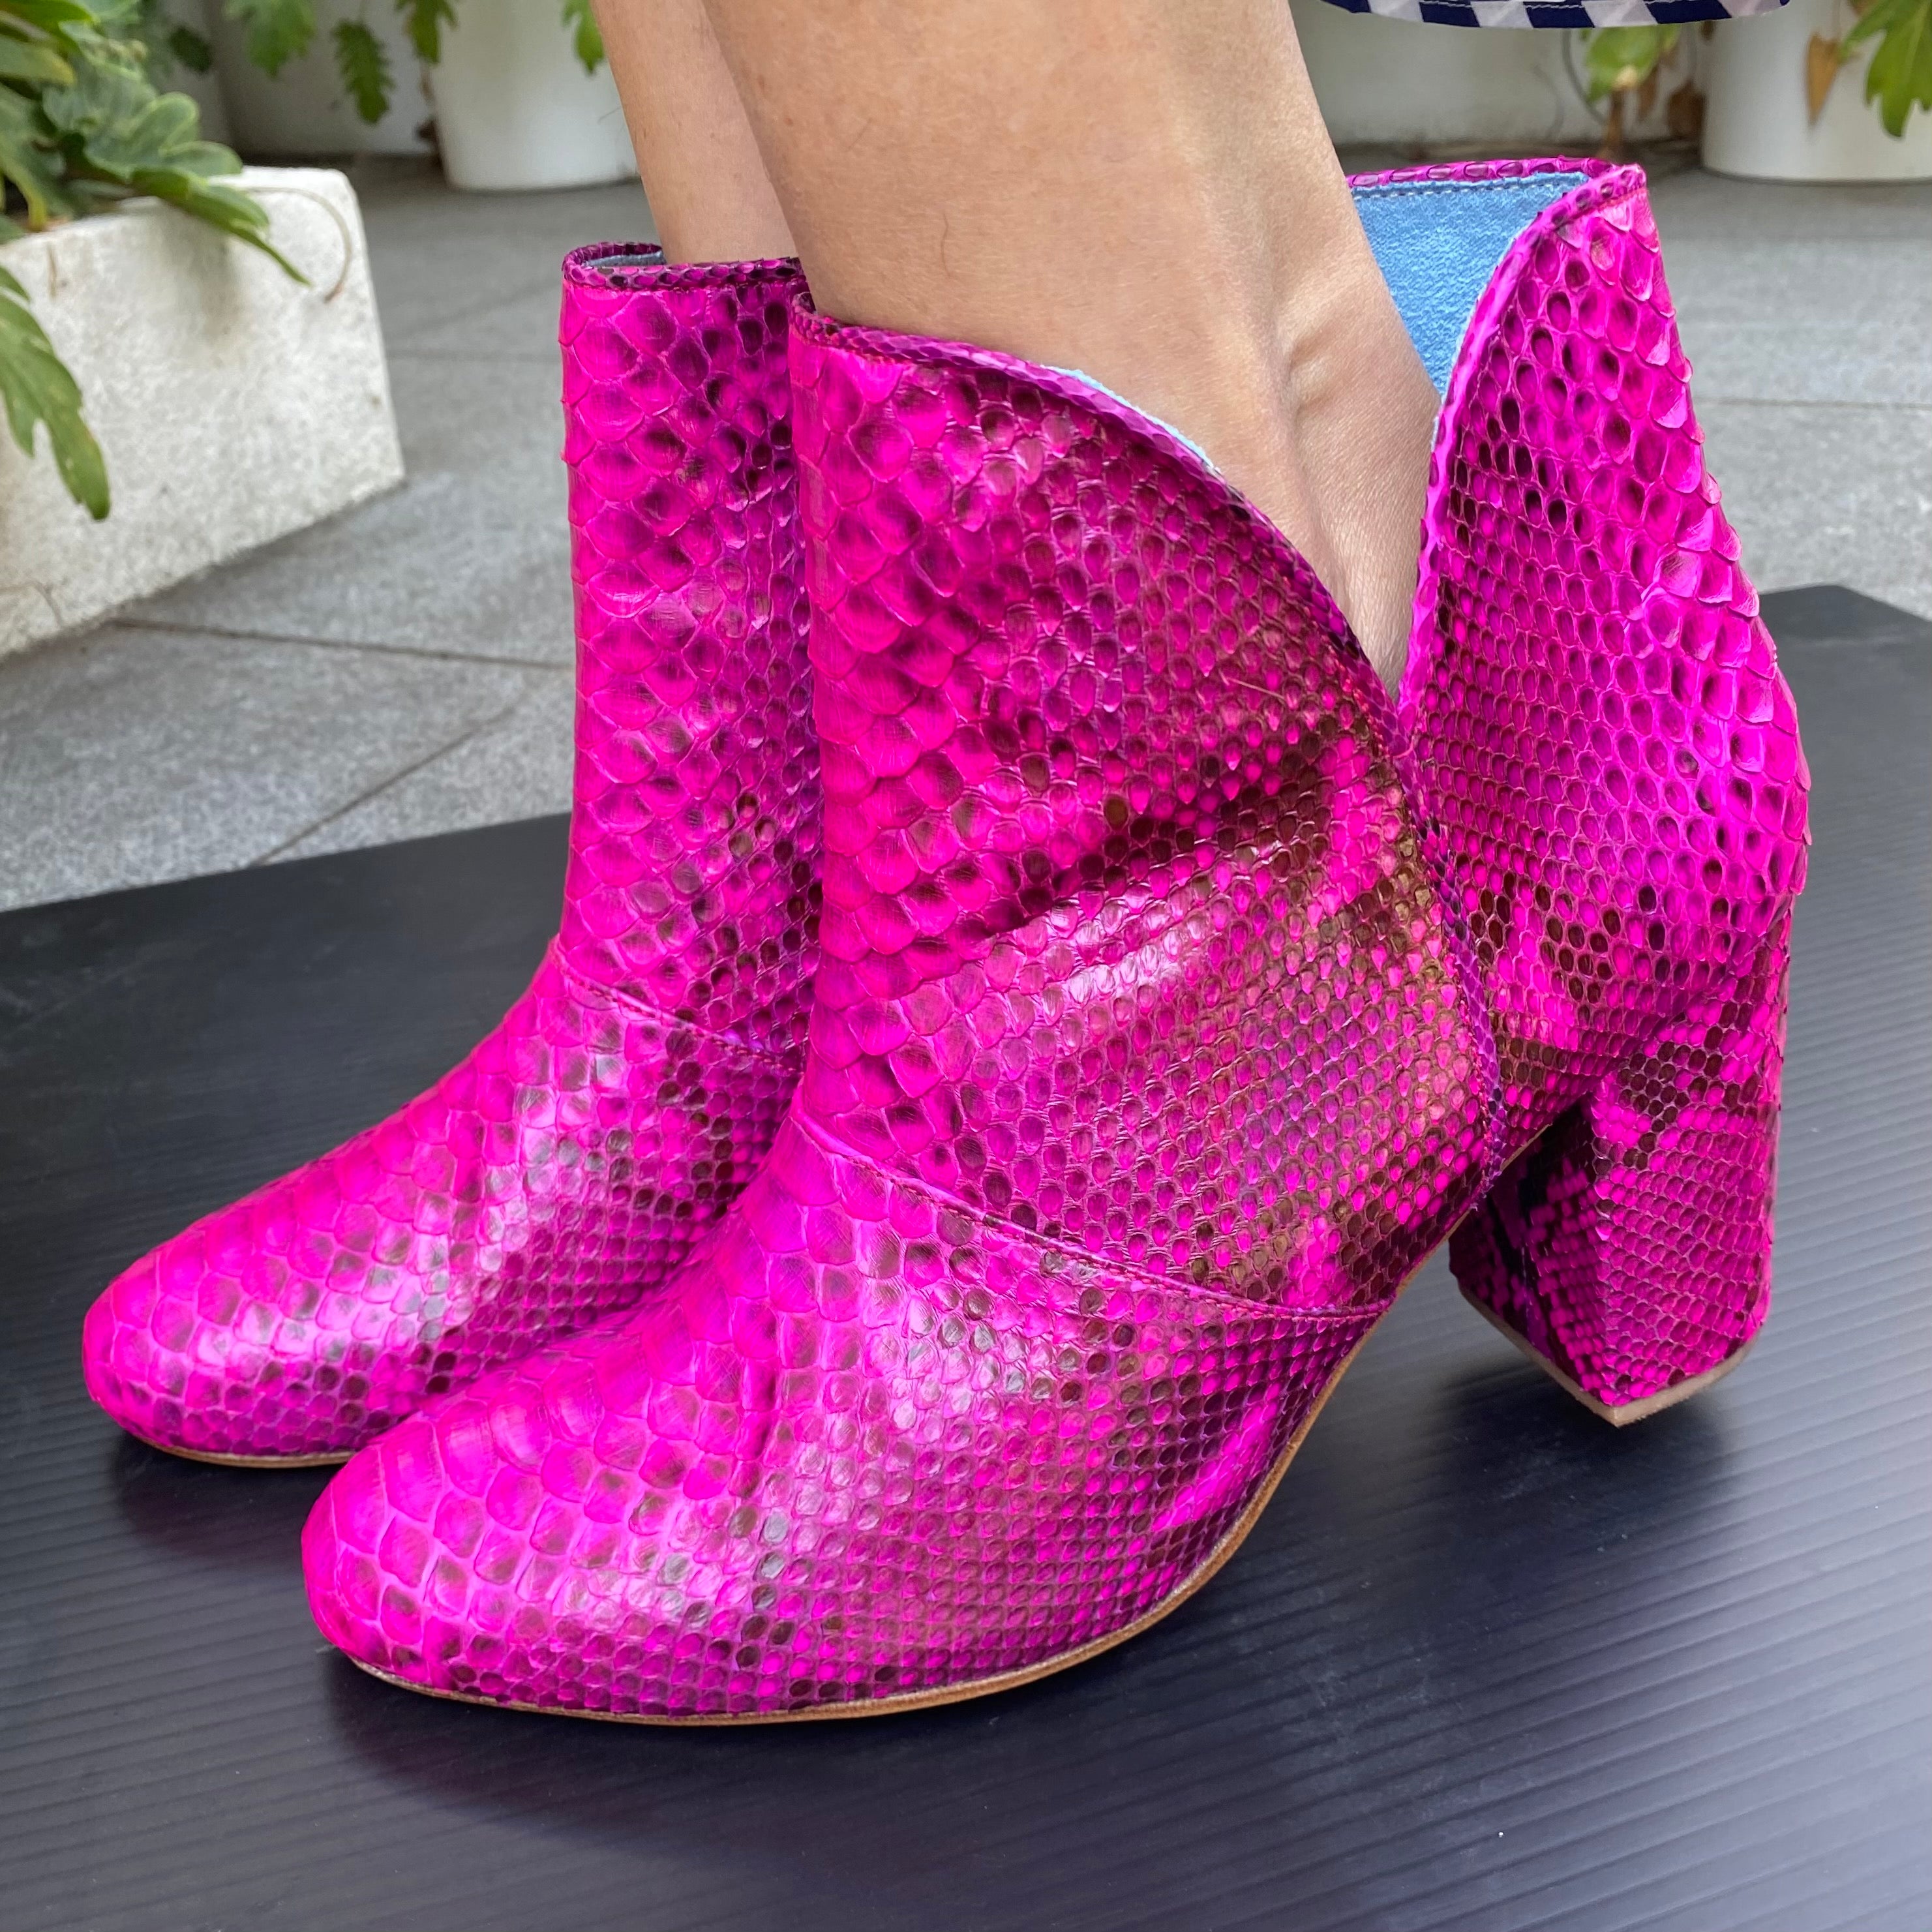 Joey boot - Neon pink snakeskin